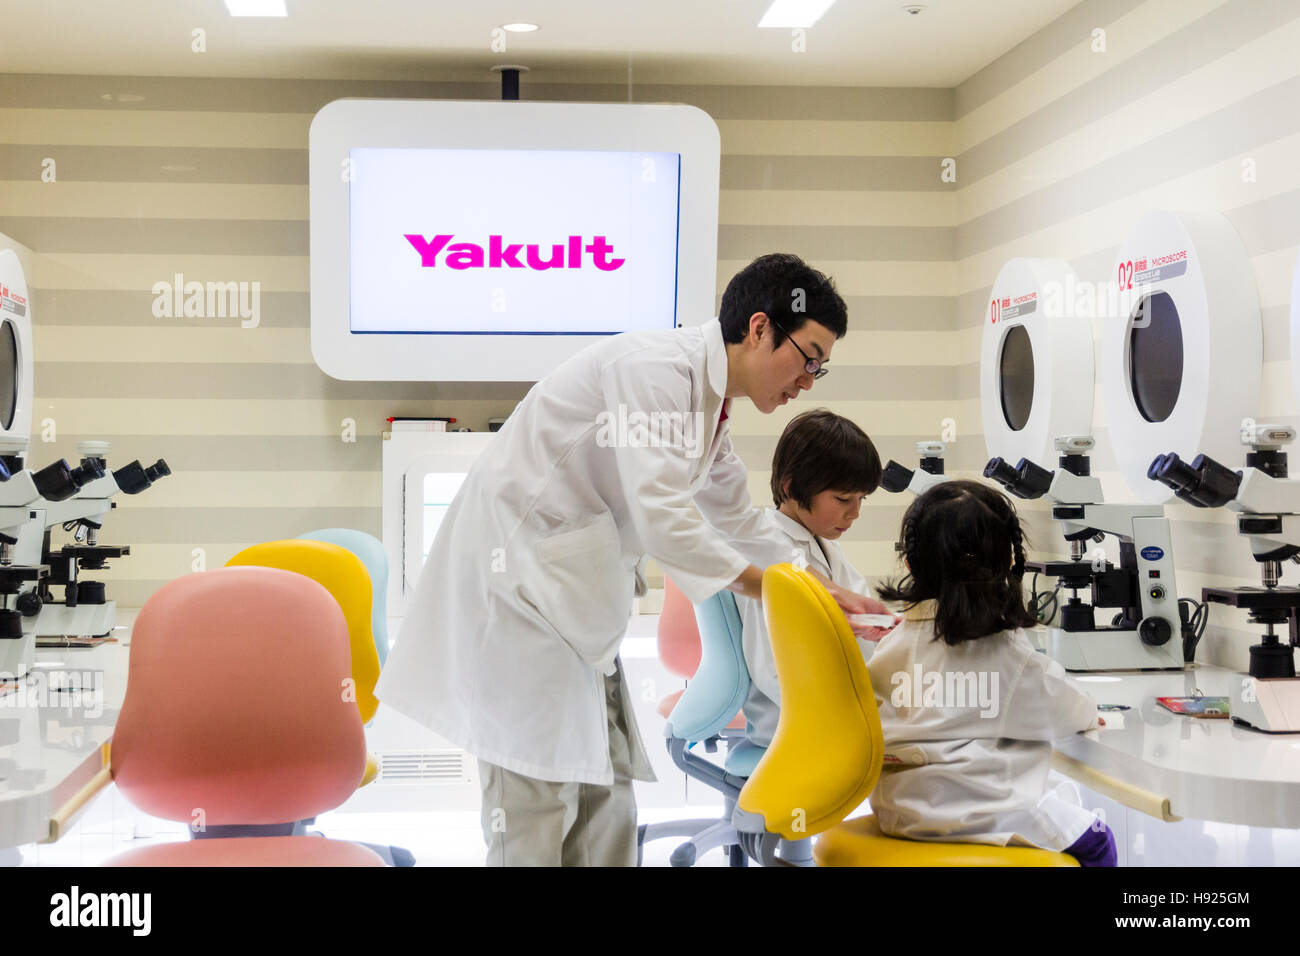 Le Japon, Nishinomiya, KidZania. 2 enfants, garçon, fille, en blanc blouses de laboratoire, en utilisant des microscopes assistée par homme adulte dans Yakult laboratoire. Banque D'Images